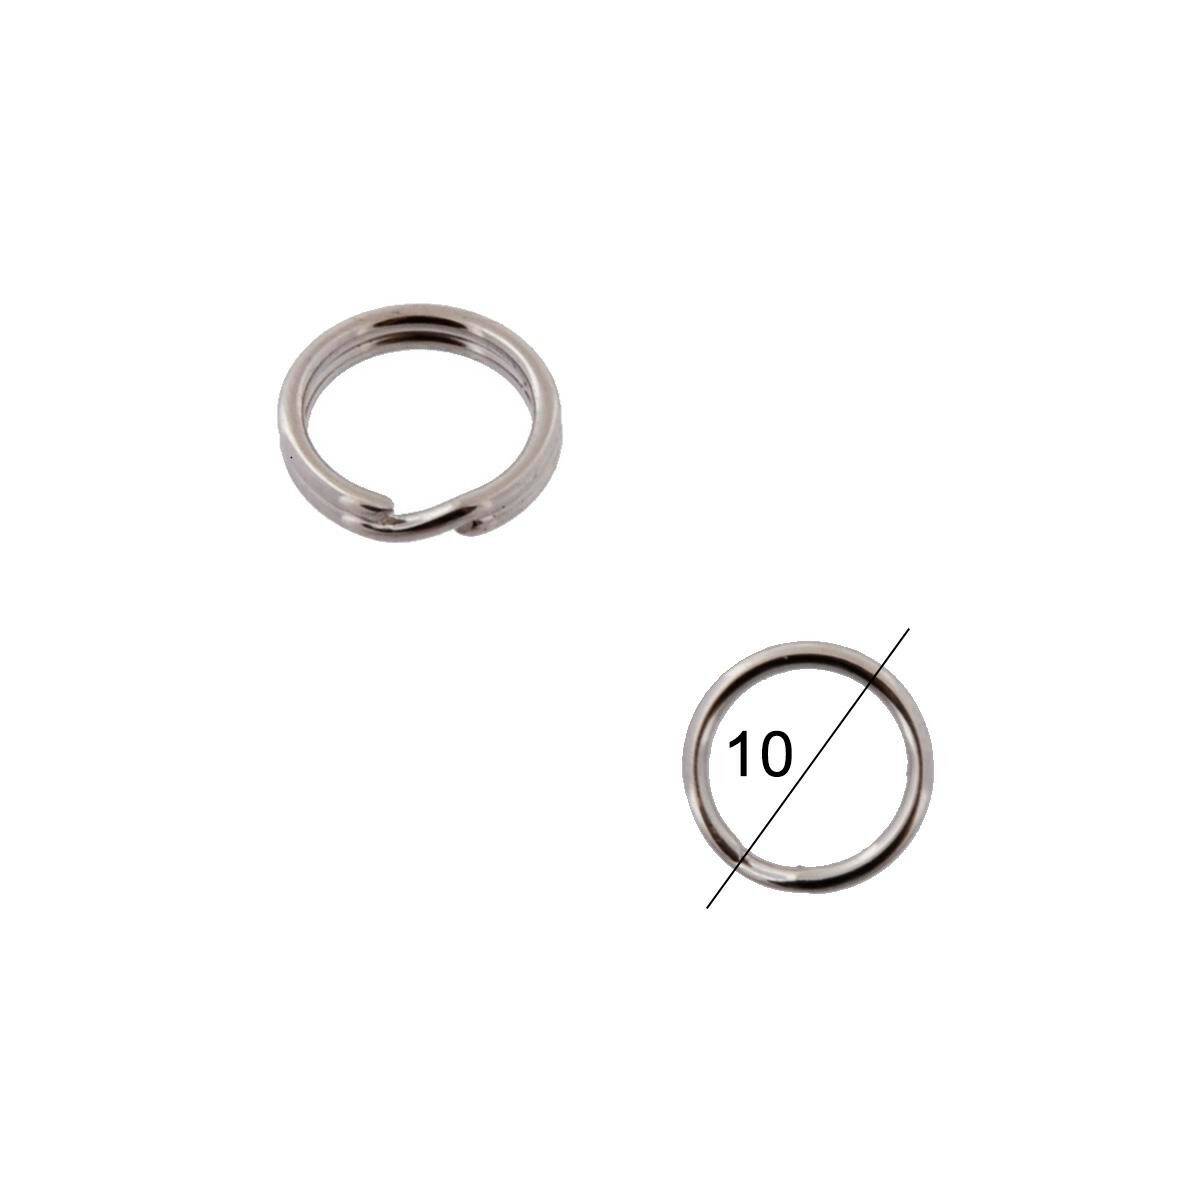 Key rings diameter 10mm